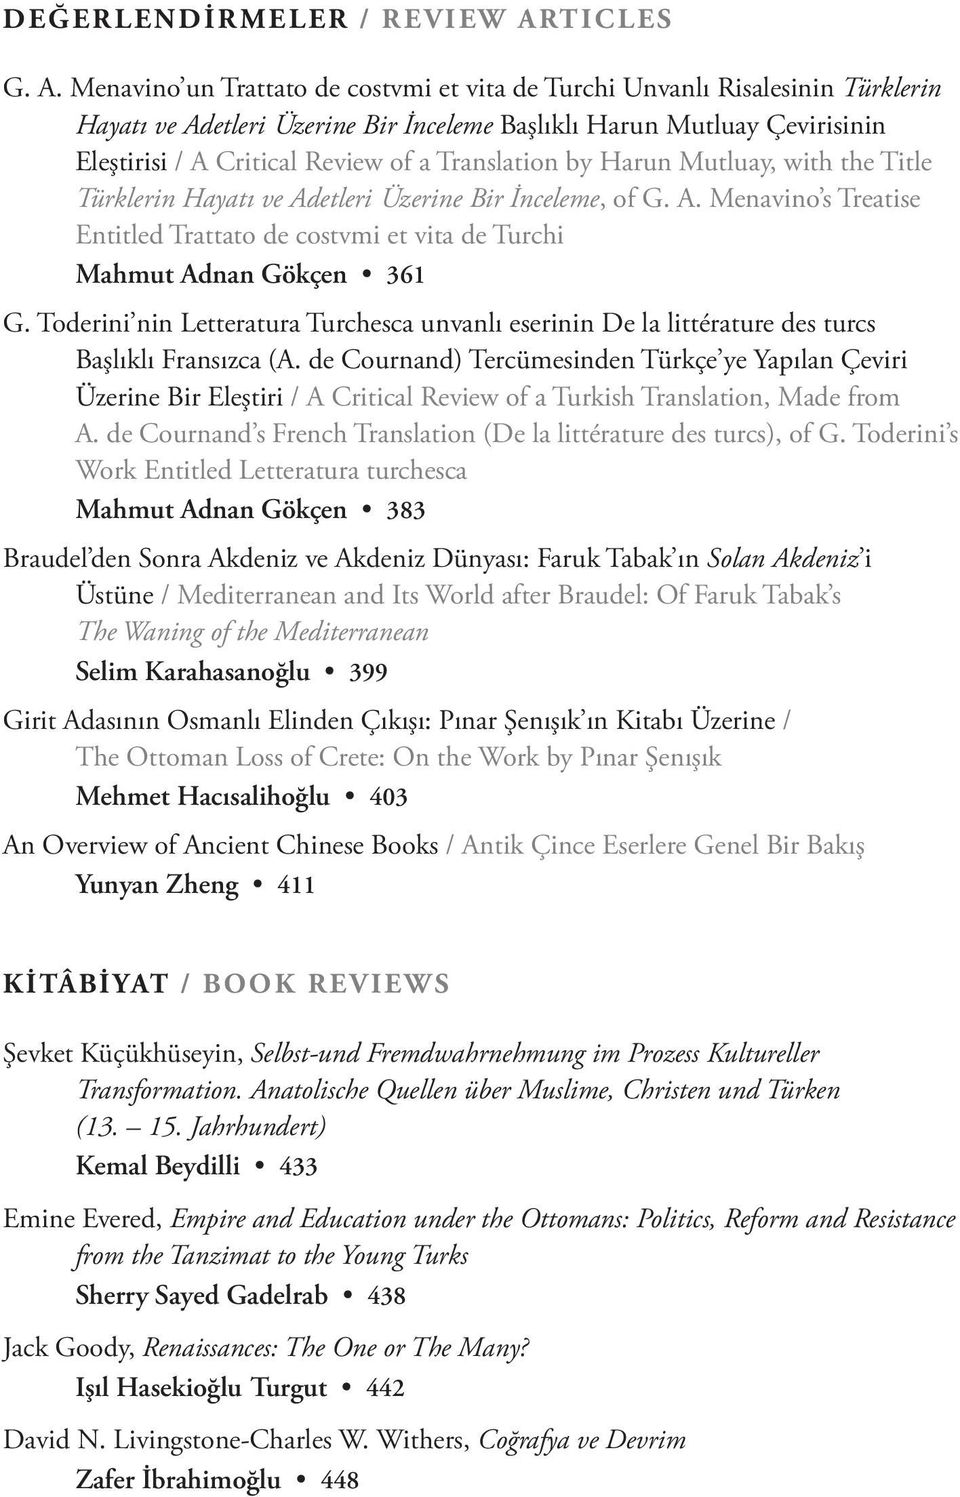 Menavino un Trattato de costvmi et vita de Turchi Unvanlı Risalesinin Türklerin Hayatı ve Adetleri Üzerine Bir İnceleme Başlıklı Harun Mutluay Çevirisinin Eleştirisi / A Critical Review of a